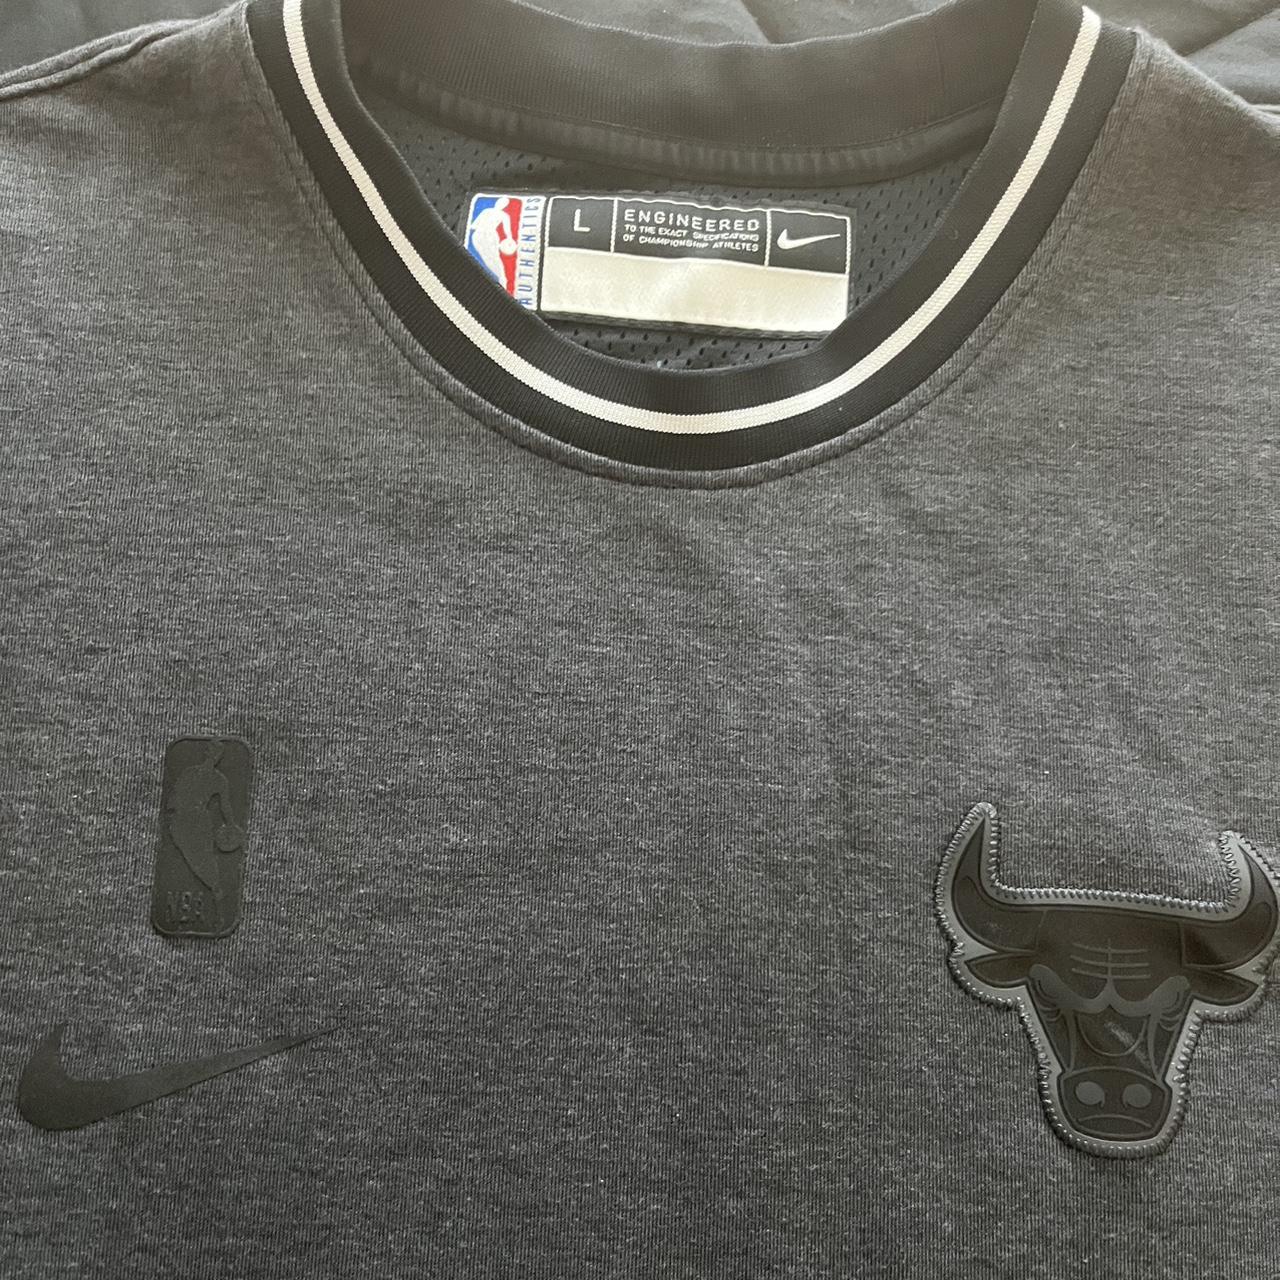 Cut off Nike Chicago Bills Sleeveless Shirt Men’s... - Depop